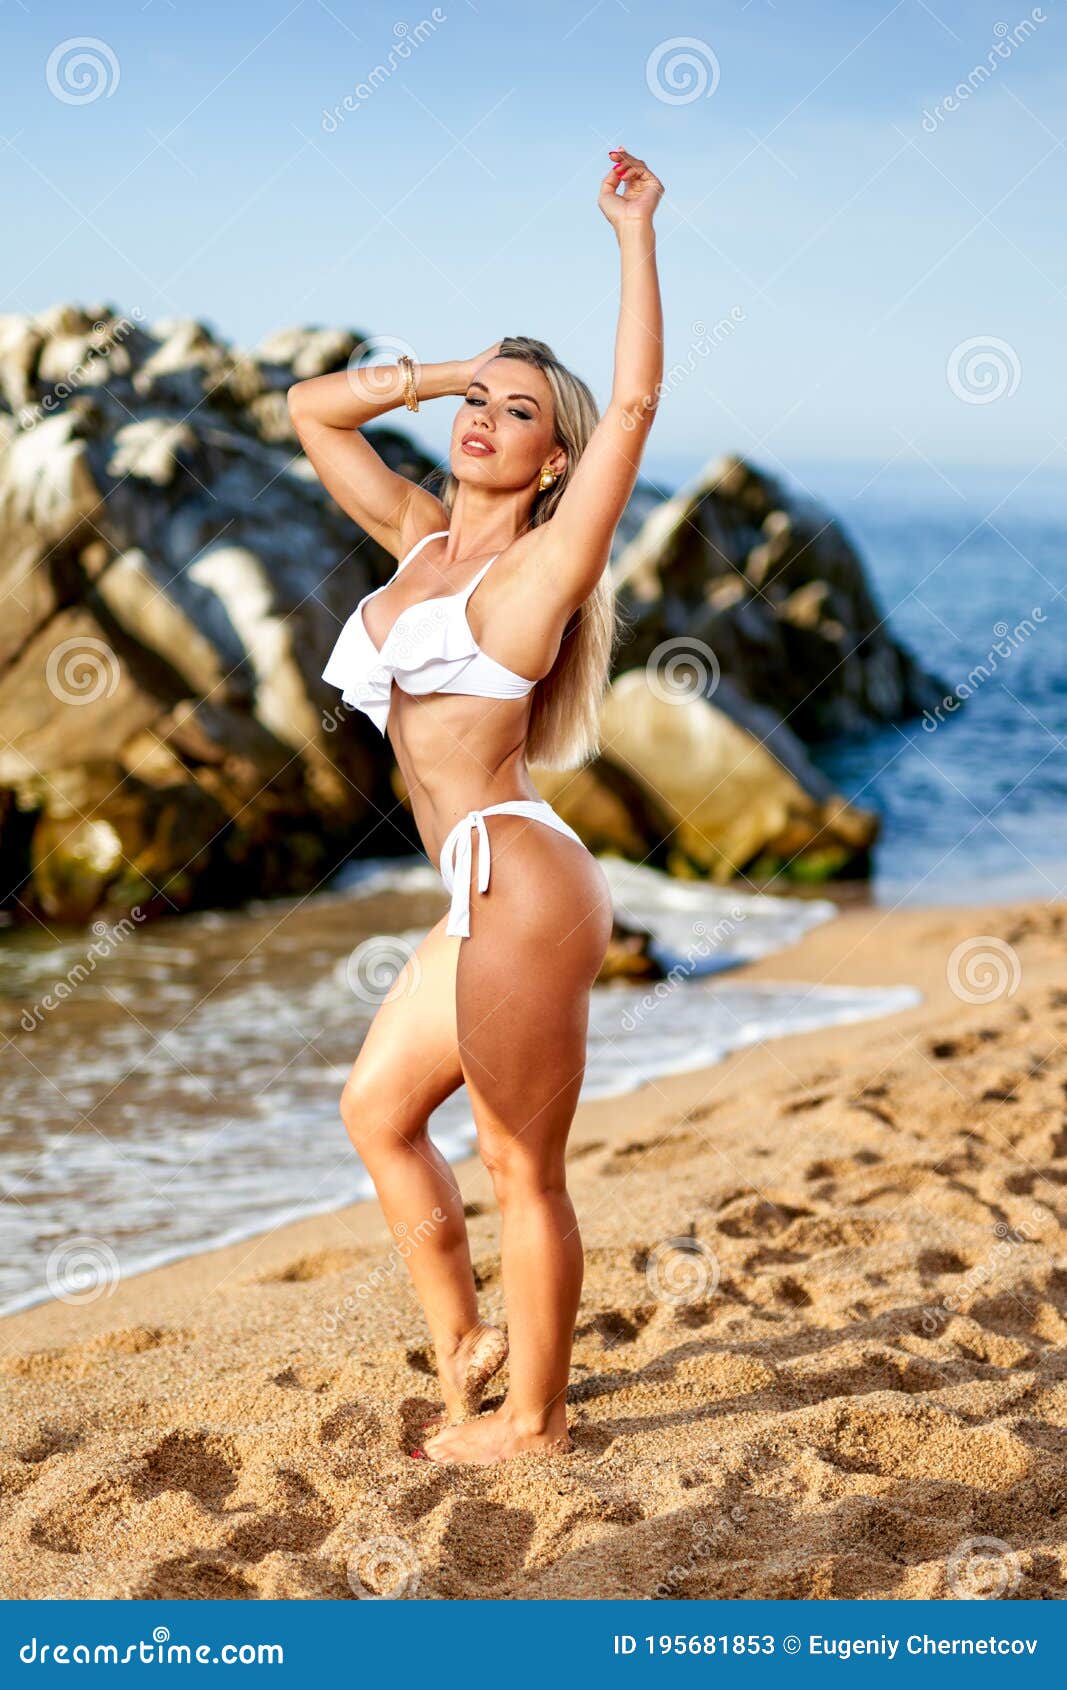 Cuerpo De Mujeres Hermosas En Bikini Sexy Sobre Fondo De Playa Imagen De Archivo Imagen De